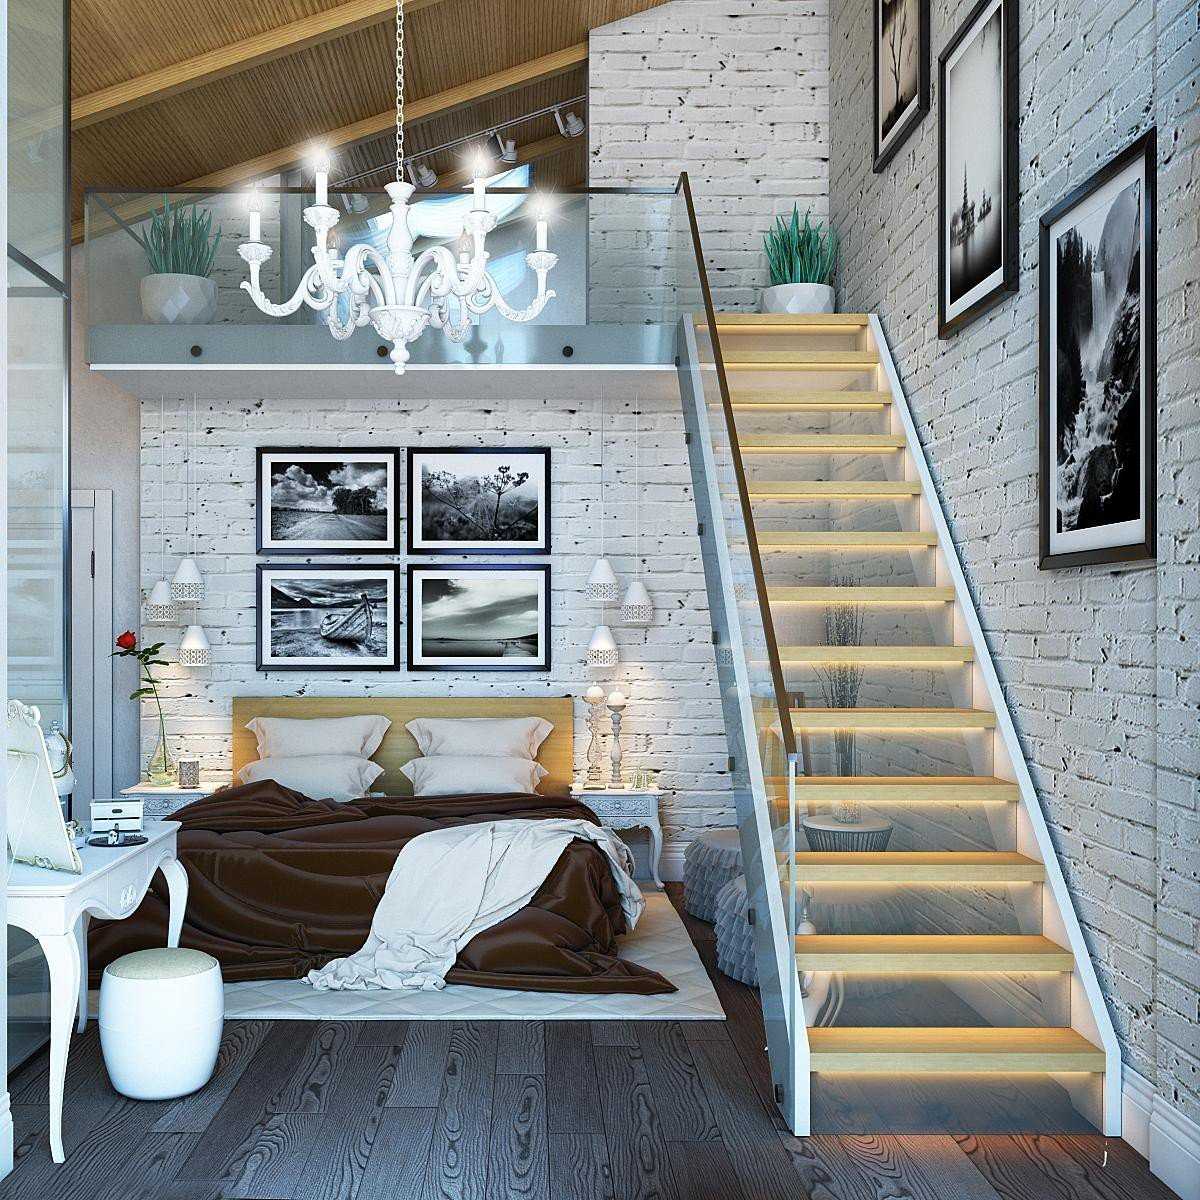 Дизайн двухуровневой квартиры  особенности пространства, основные плюсы и минусы Виды лестниц маршевая, консольная, винтовая и другие Популярные стили интерьера и их использование в разных комнатах Советы дизайнера по выбору освещения и мебели